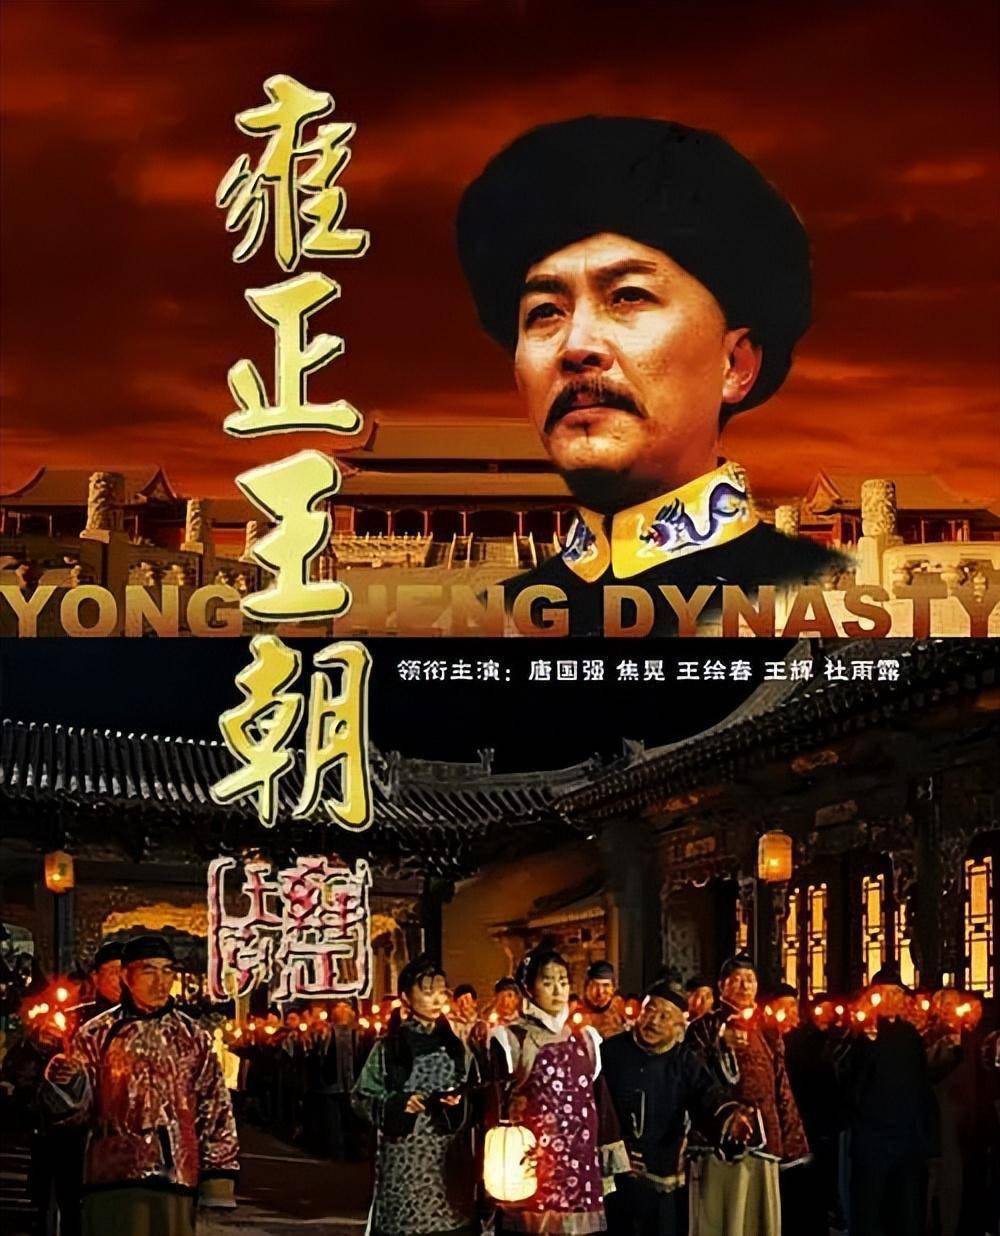 1999年,电视剧《雍正王朝》的播出成为中国电视剧发展史上的里程碑